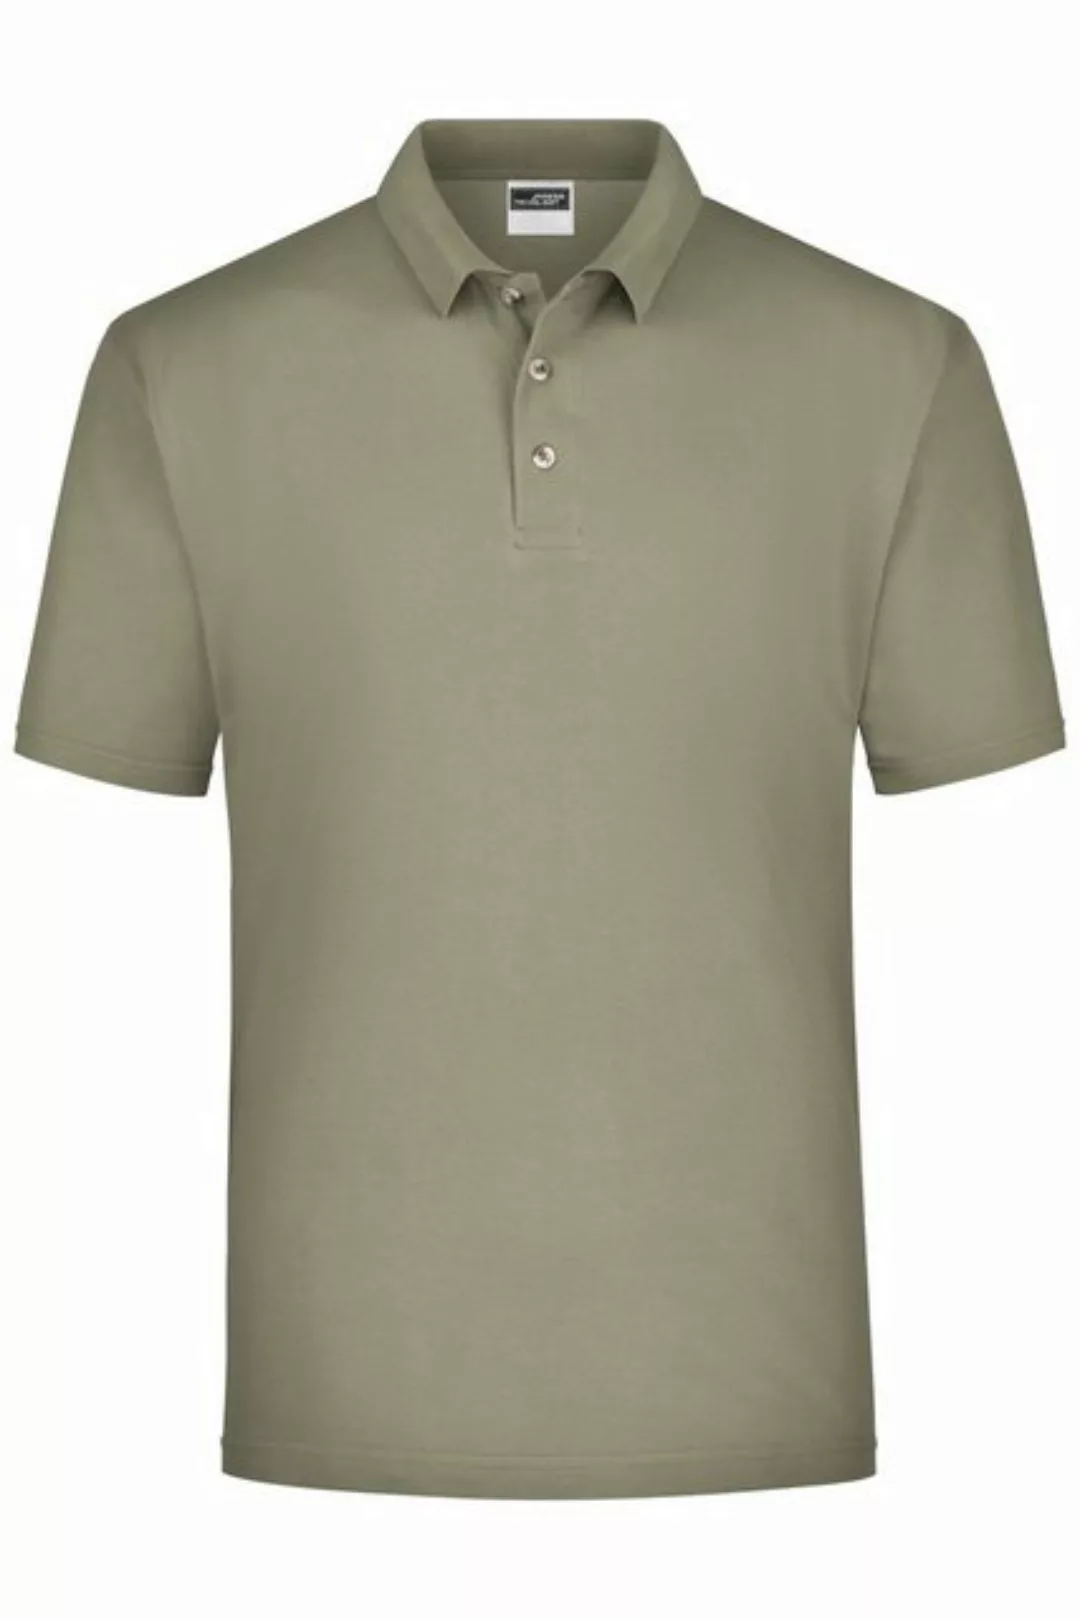 James & Nicholson Poloshirt Klassisches Herren Basic Polohemd für Freizeit günstig online kaufen